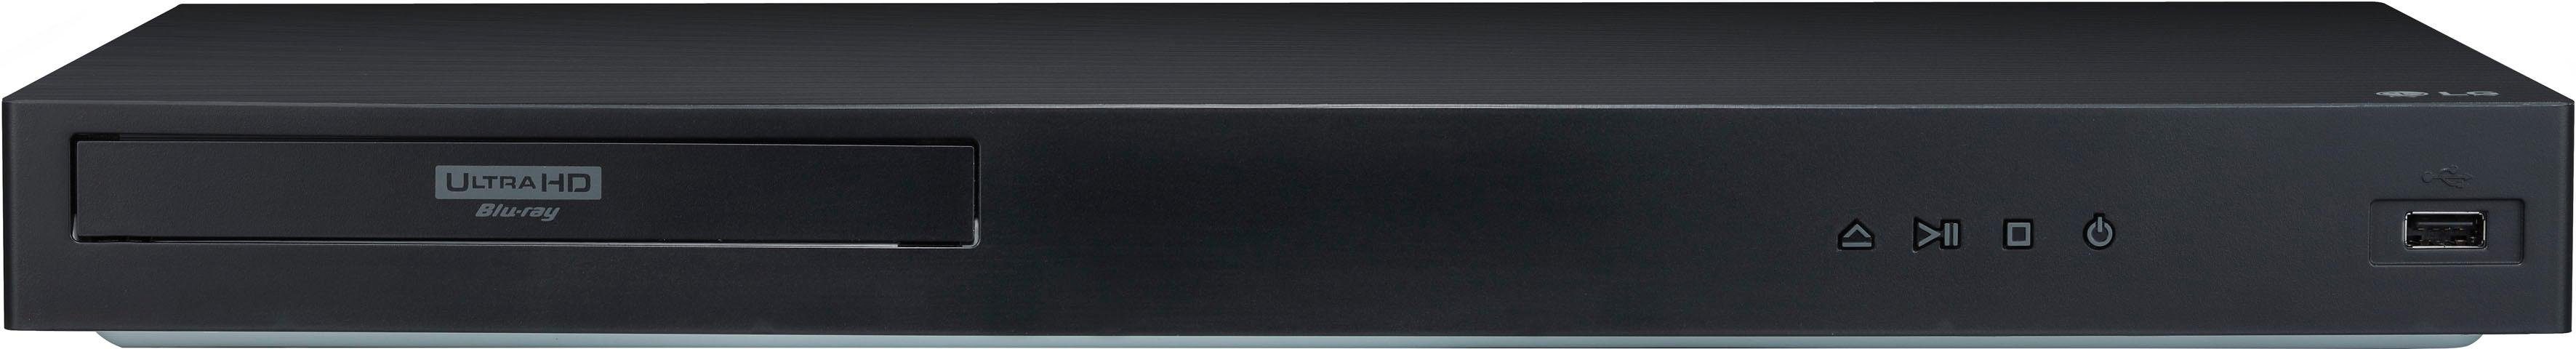 LG UBK90 Blu-ray-Player (4k Ultra Upscaling) HD, WLAN, 4K